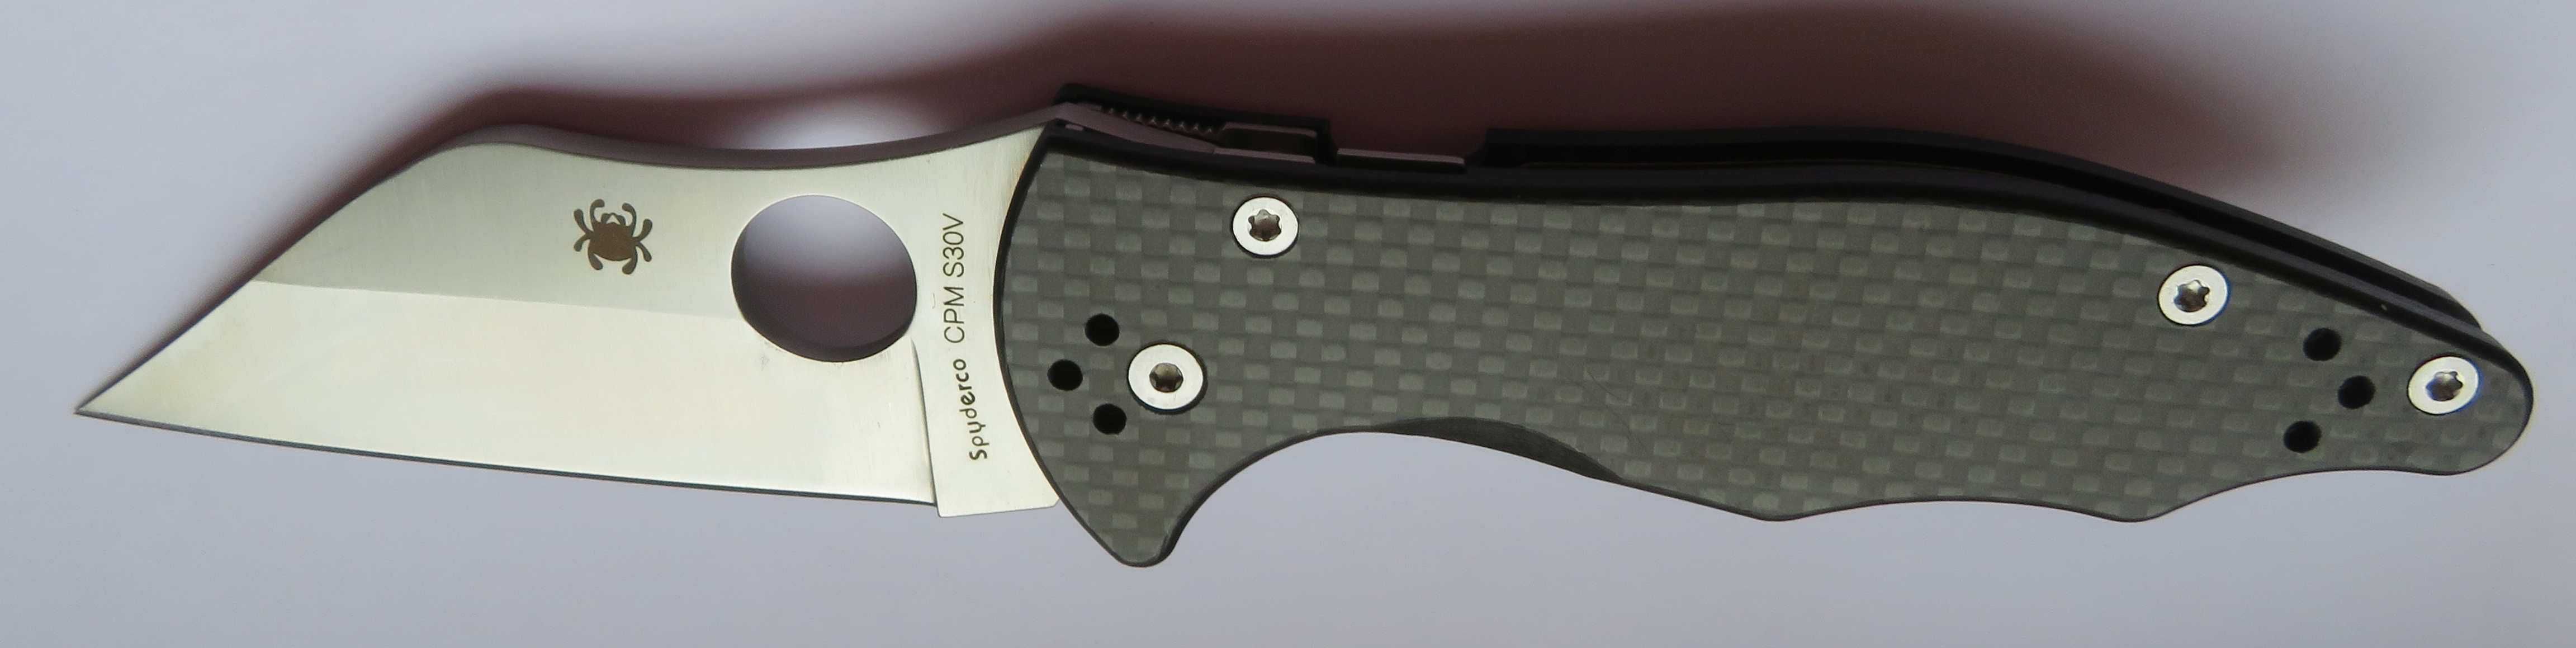 Nóż folder Spyderco Yojimbo  carbon